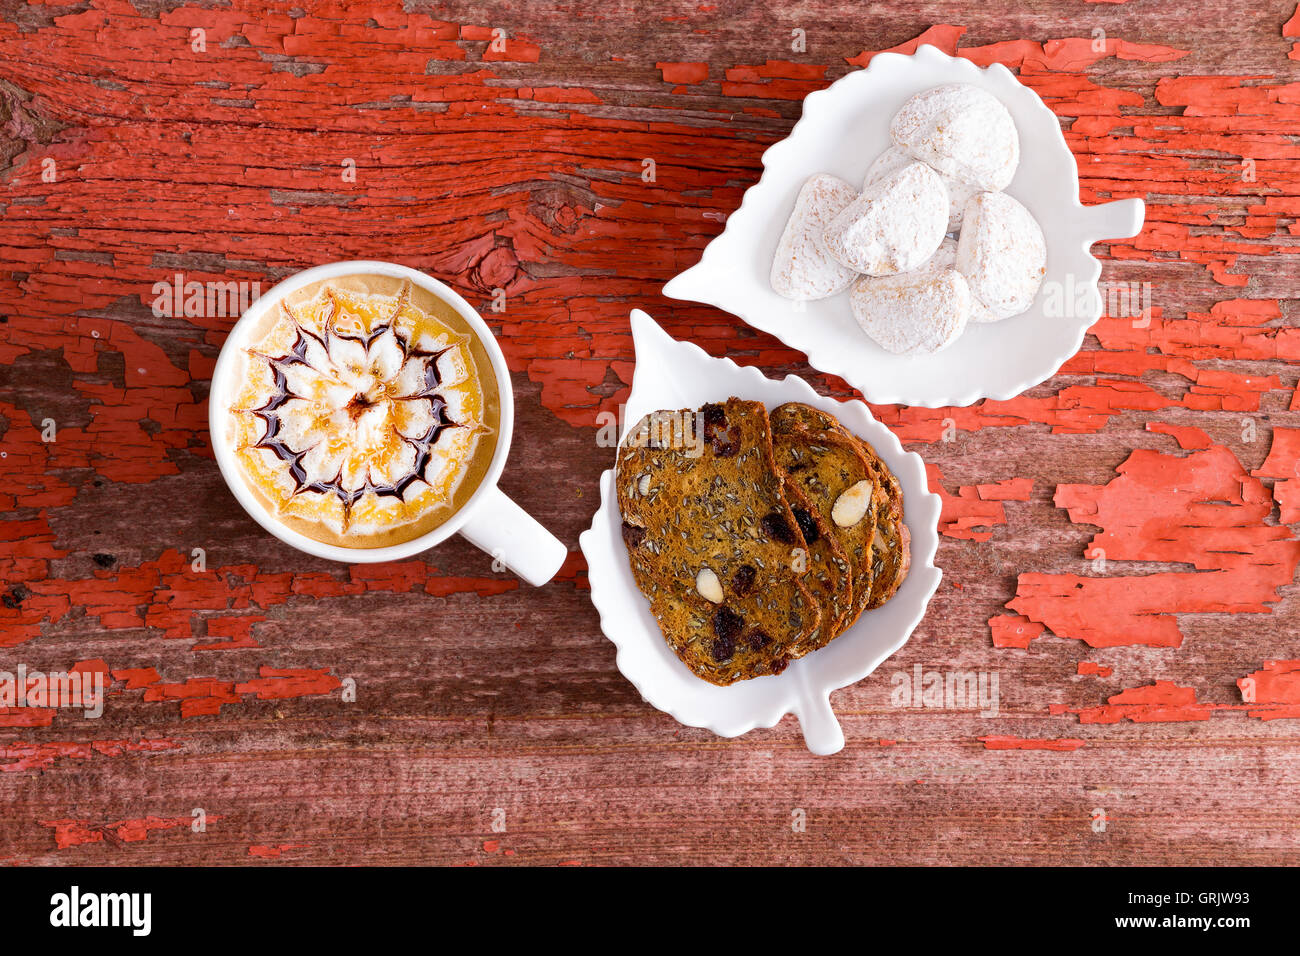 Chocolat caramel latte avec un modèle artistique dans la mousse servi avec du pain croustillant de noix et amandes enrobés de sucre cook wedge Banque D'Images